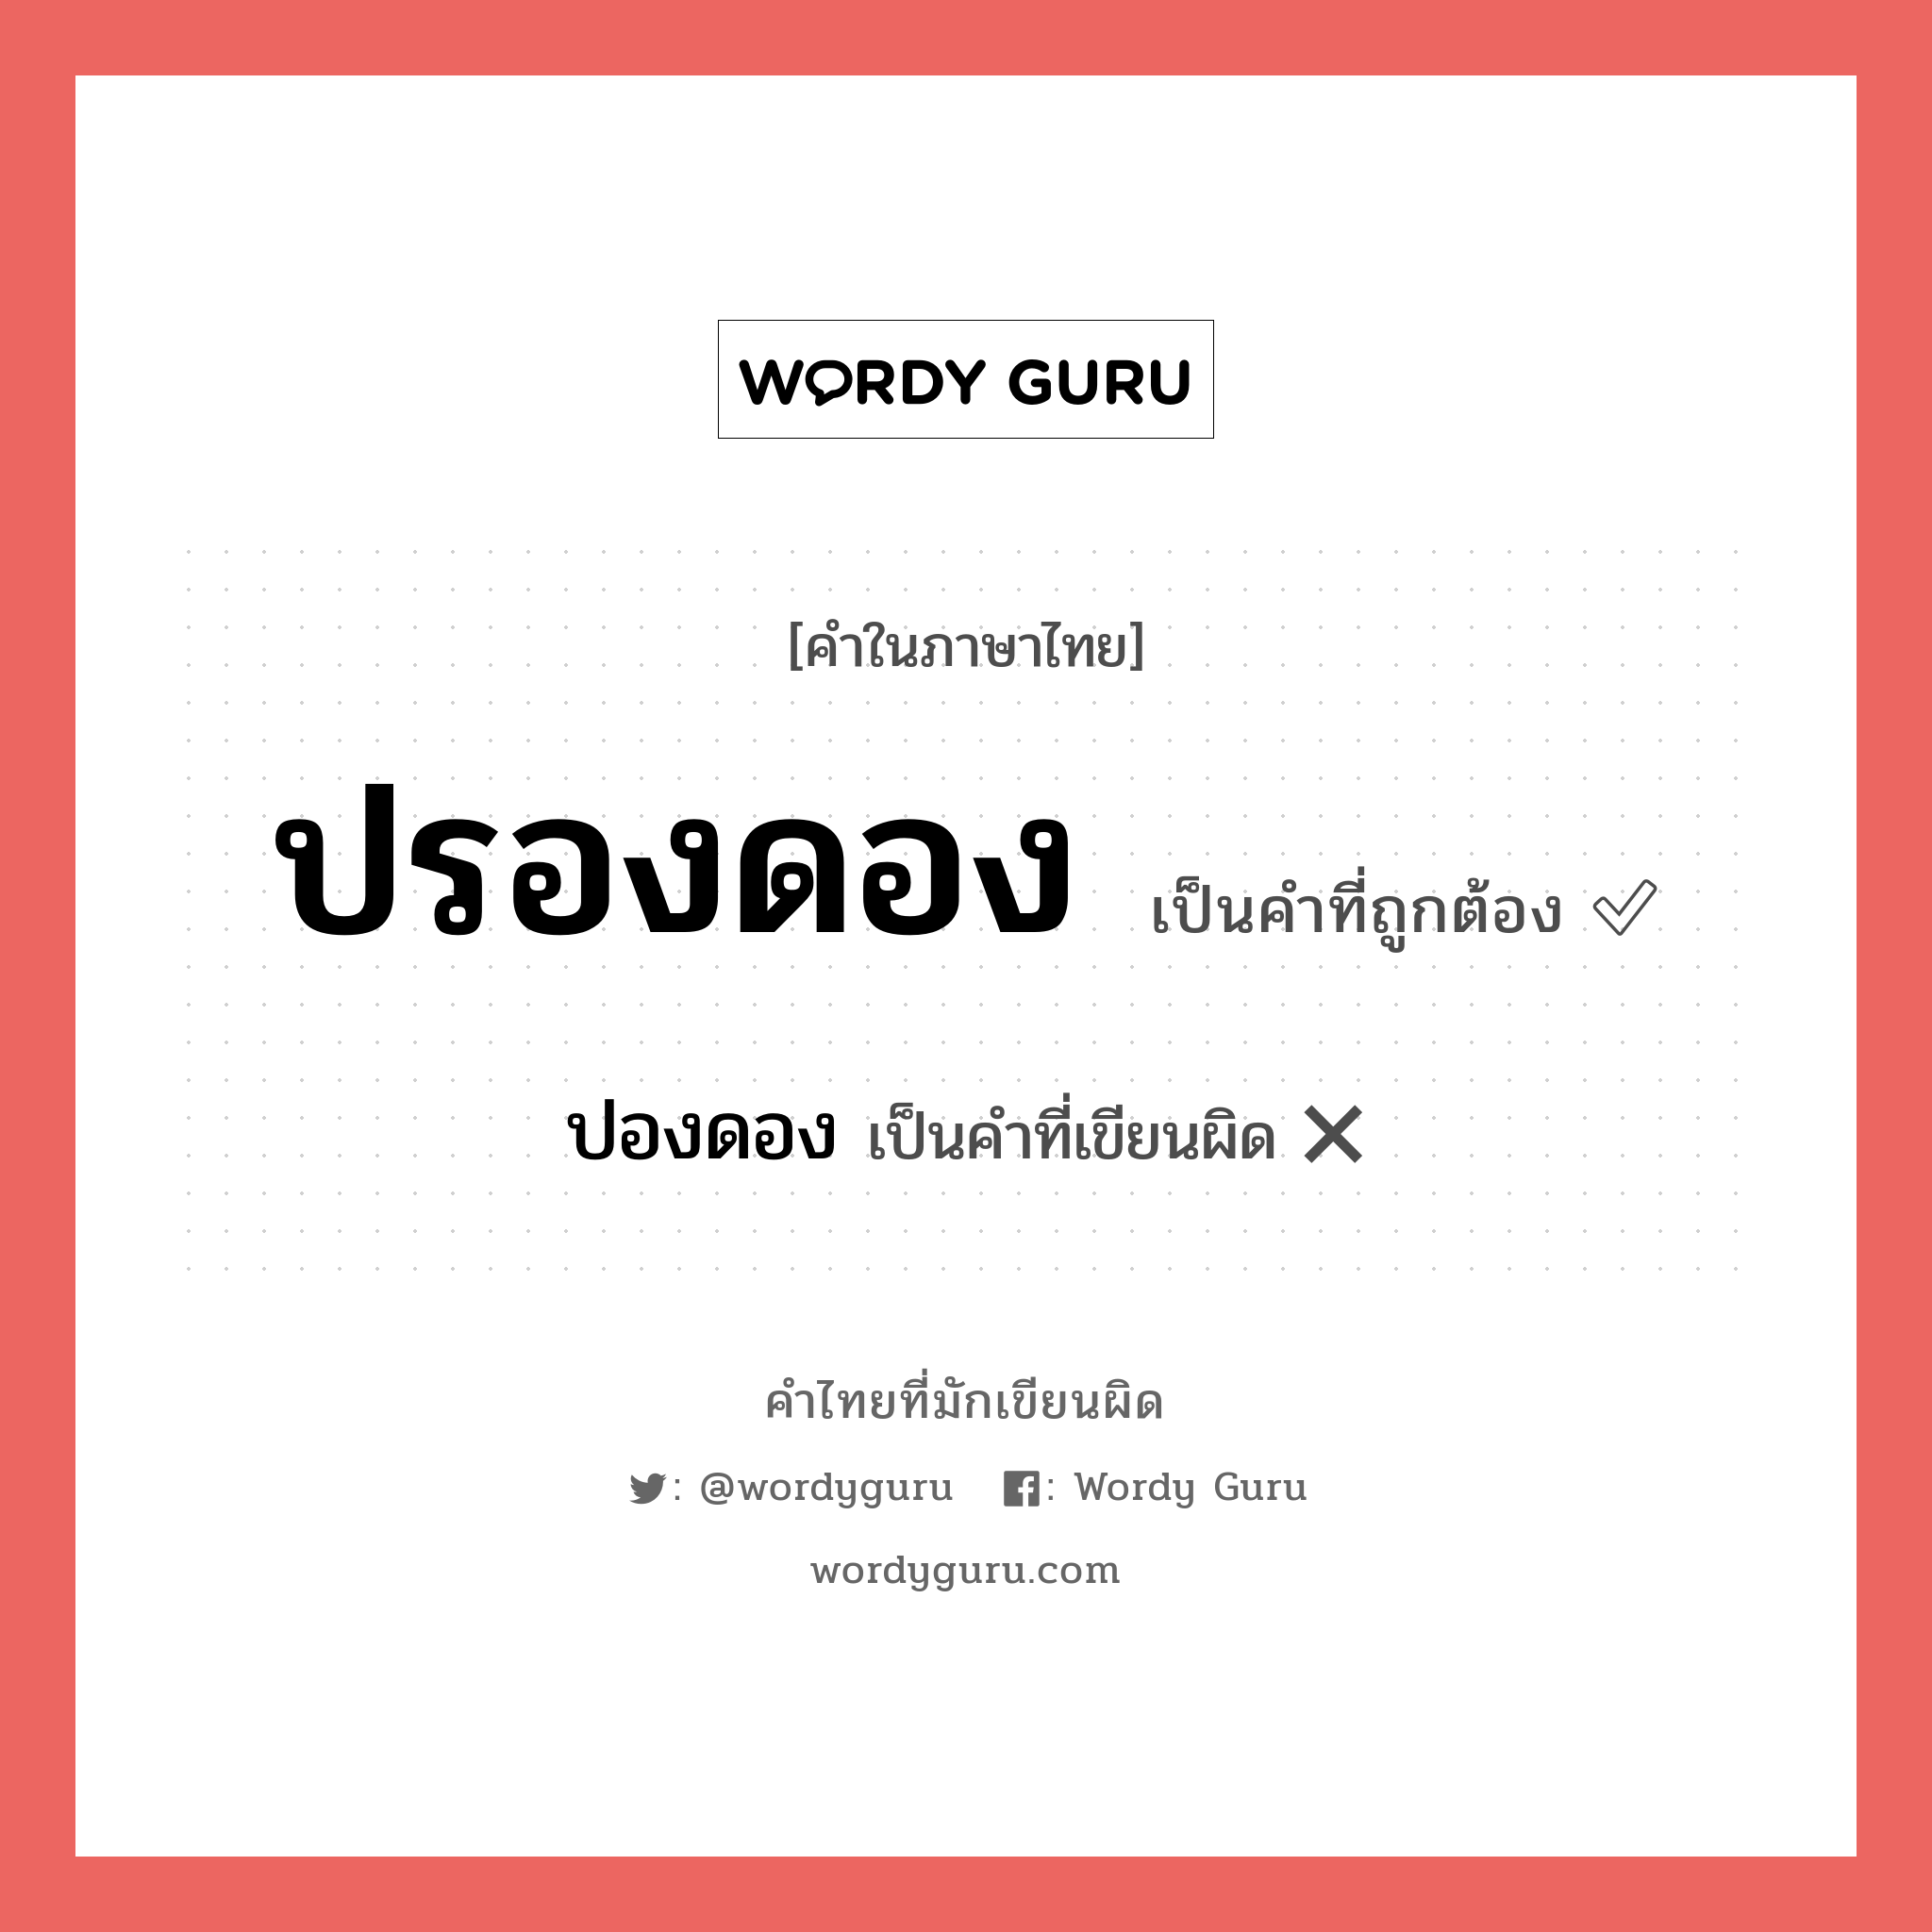 ปองดอง หรือ ปรองดอง คำไหนเขียนถูก?, คำในภาษาไทยที่มักเขียนผิด ปองดอง คำที่ผิด ❌ ปรองดอง